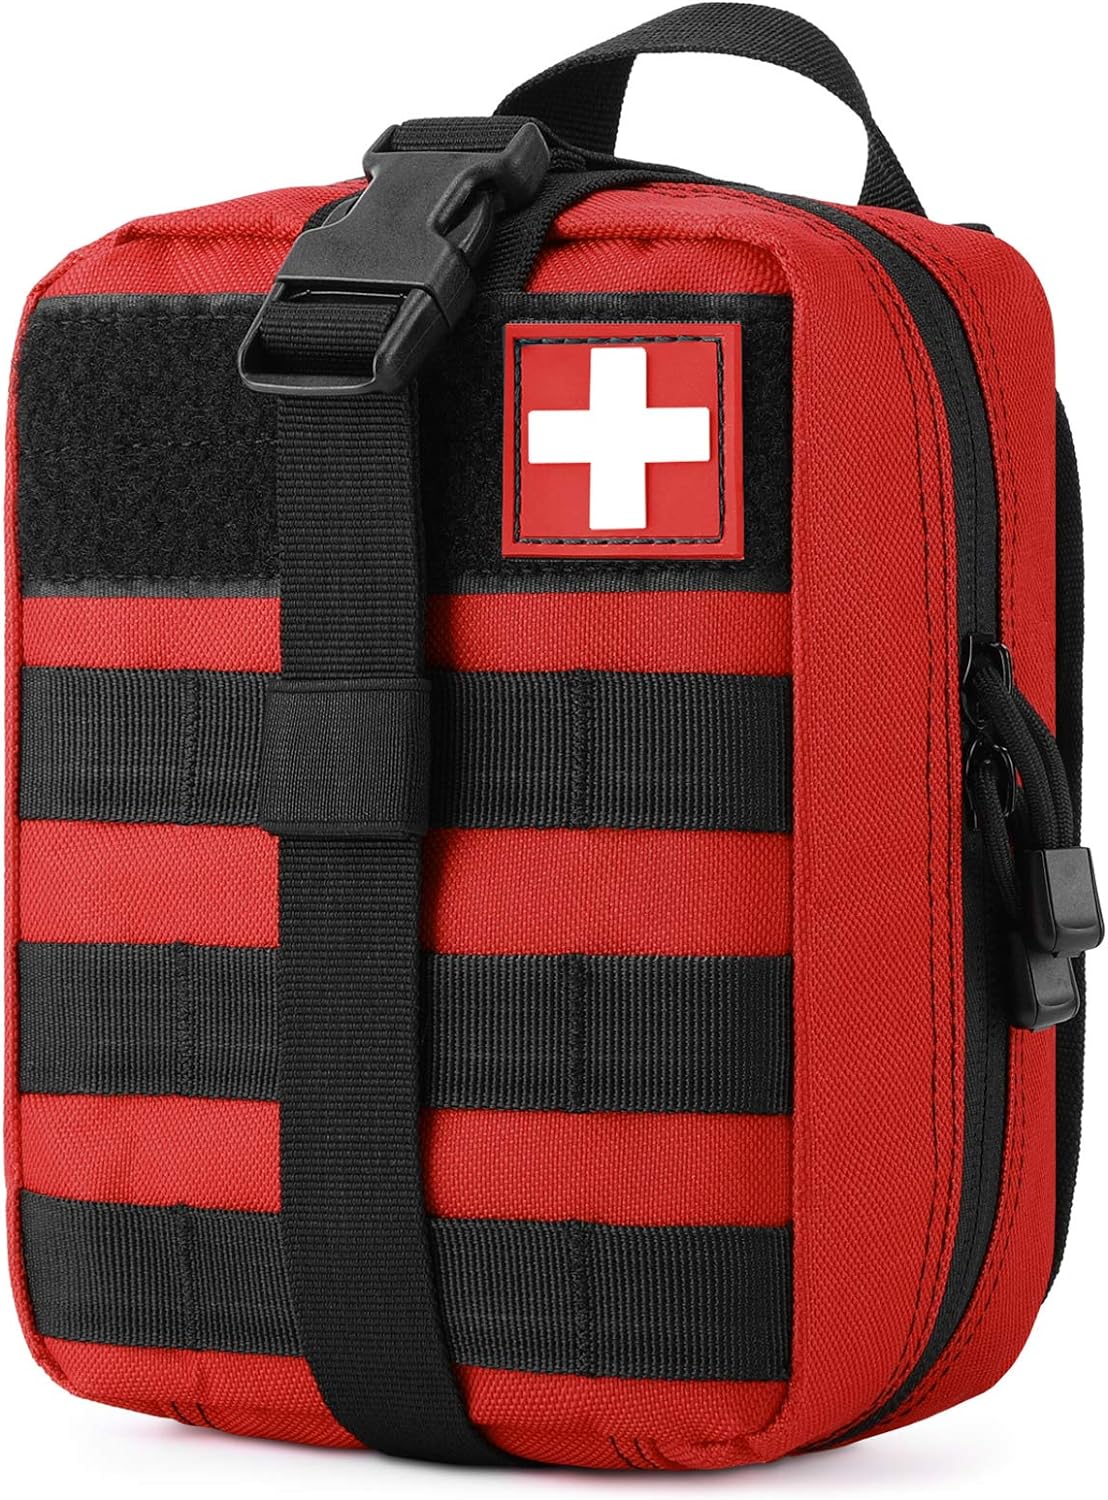 MOLLE orvosi tasak EMT elsősegélynyújtó tasak, kiszakítható IFAK taktikai használati táska szabadtéri tevékenységekhez Orvosi kellékek